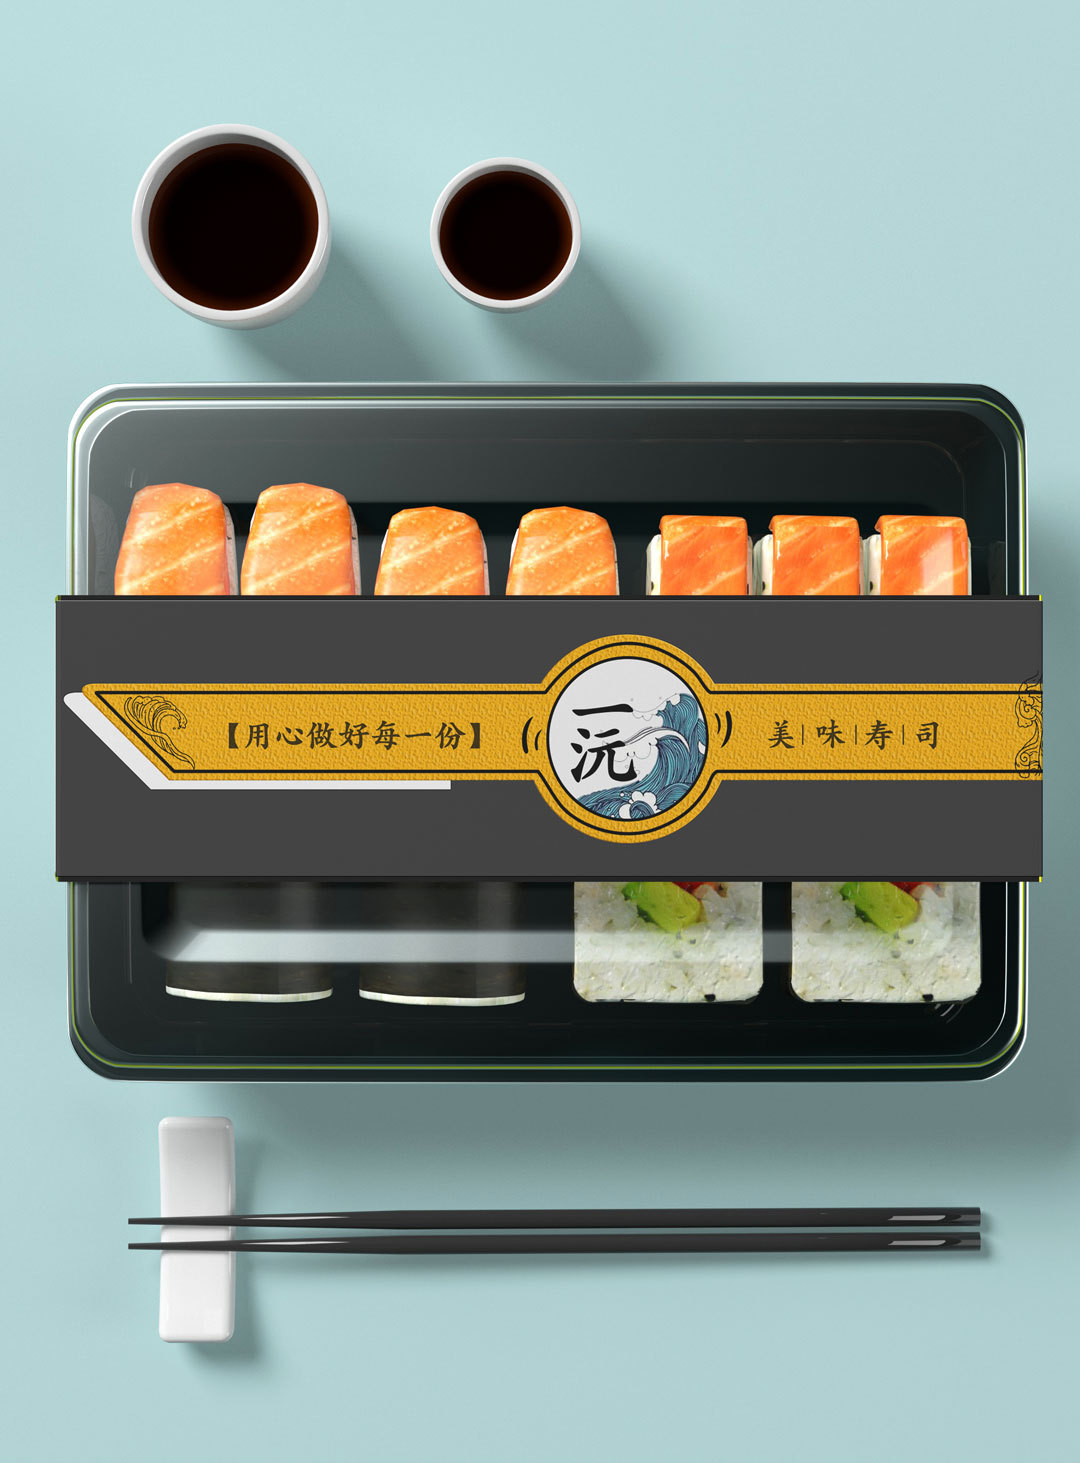 原创日系风寿司三文鱼插画包装盒设计图0